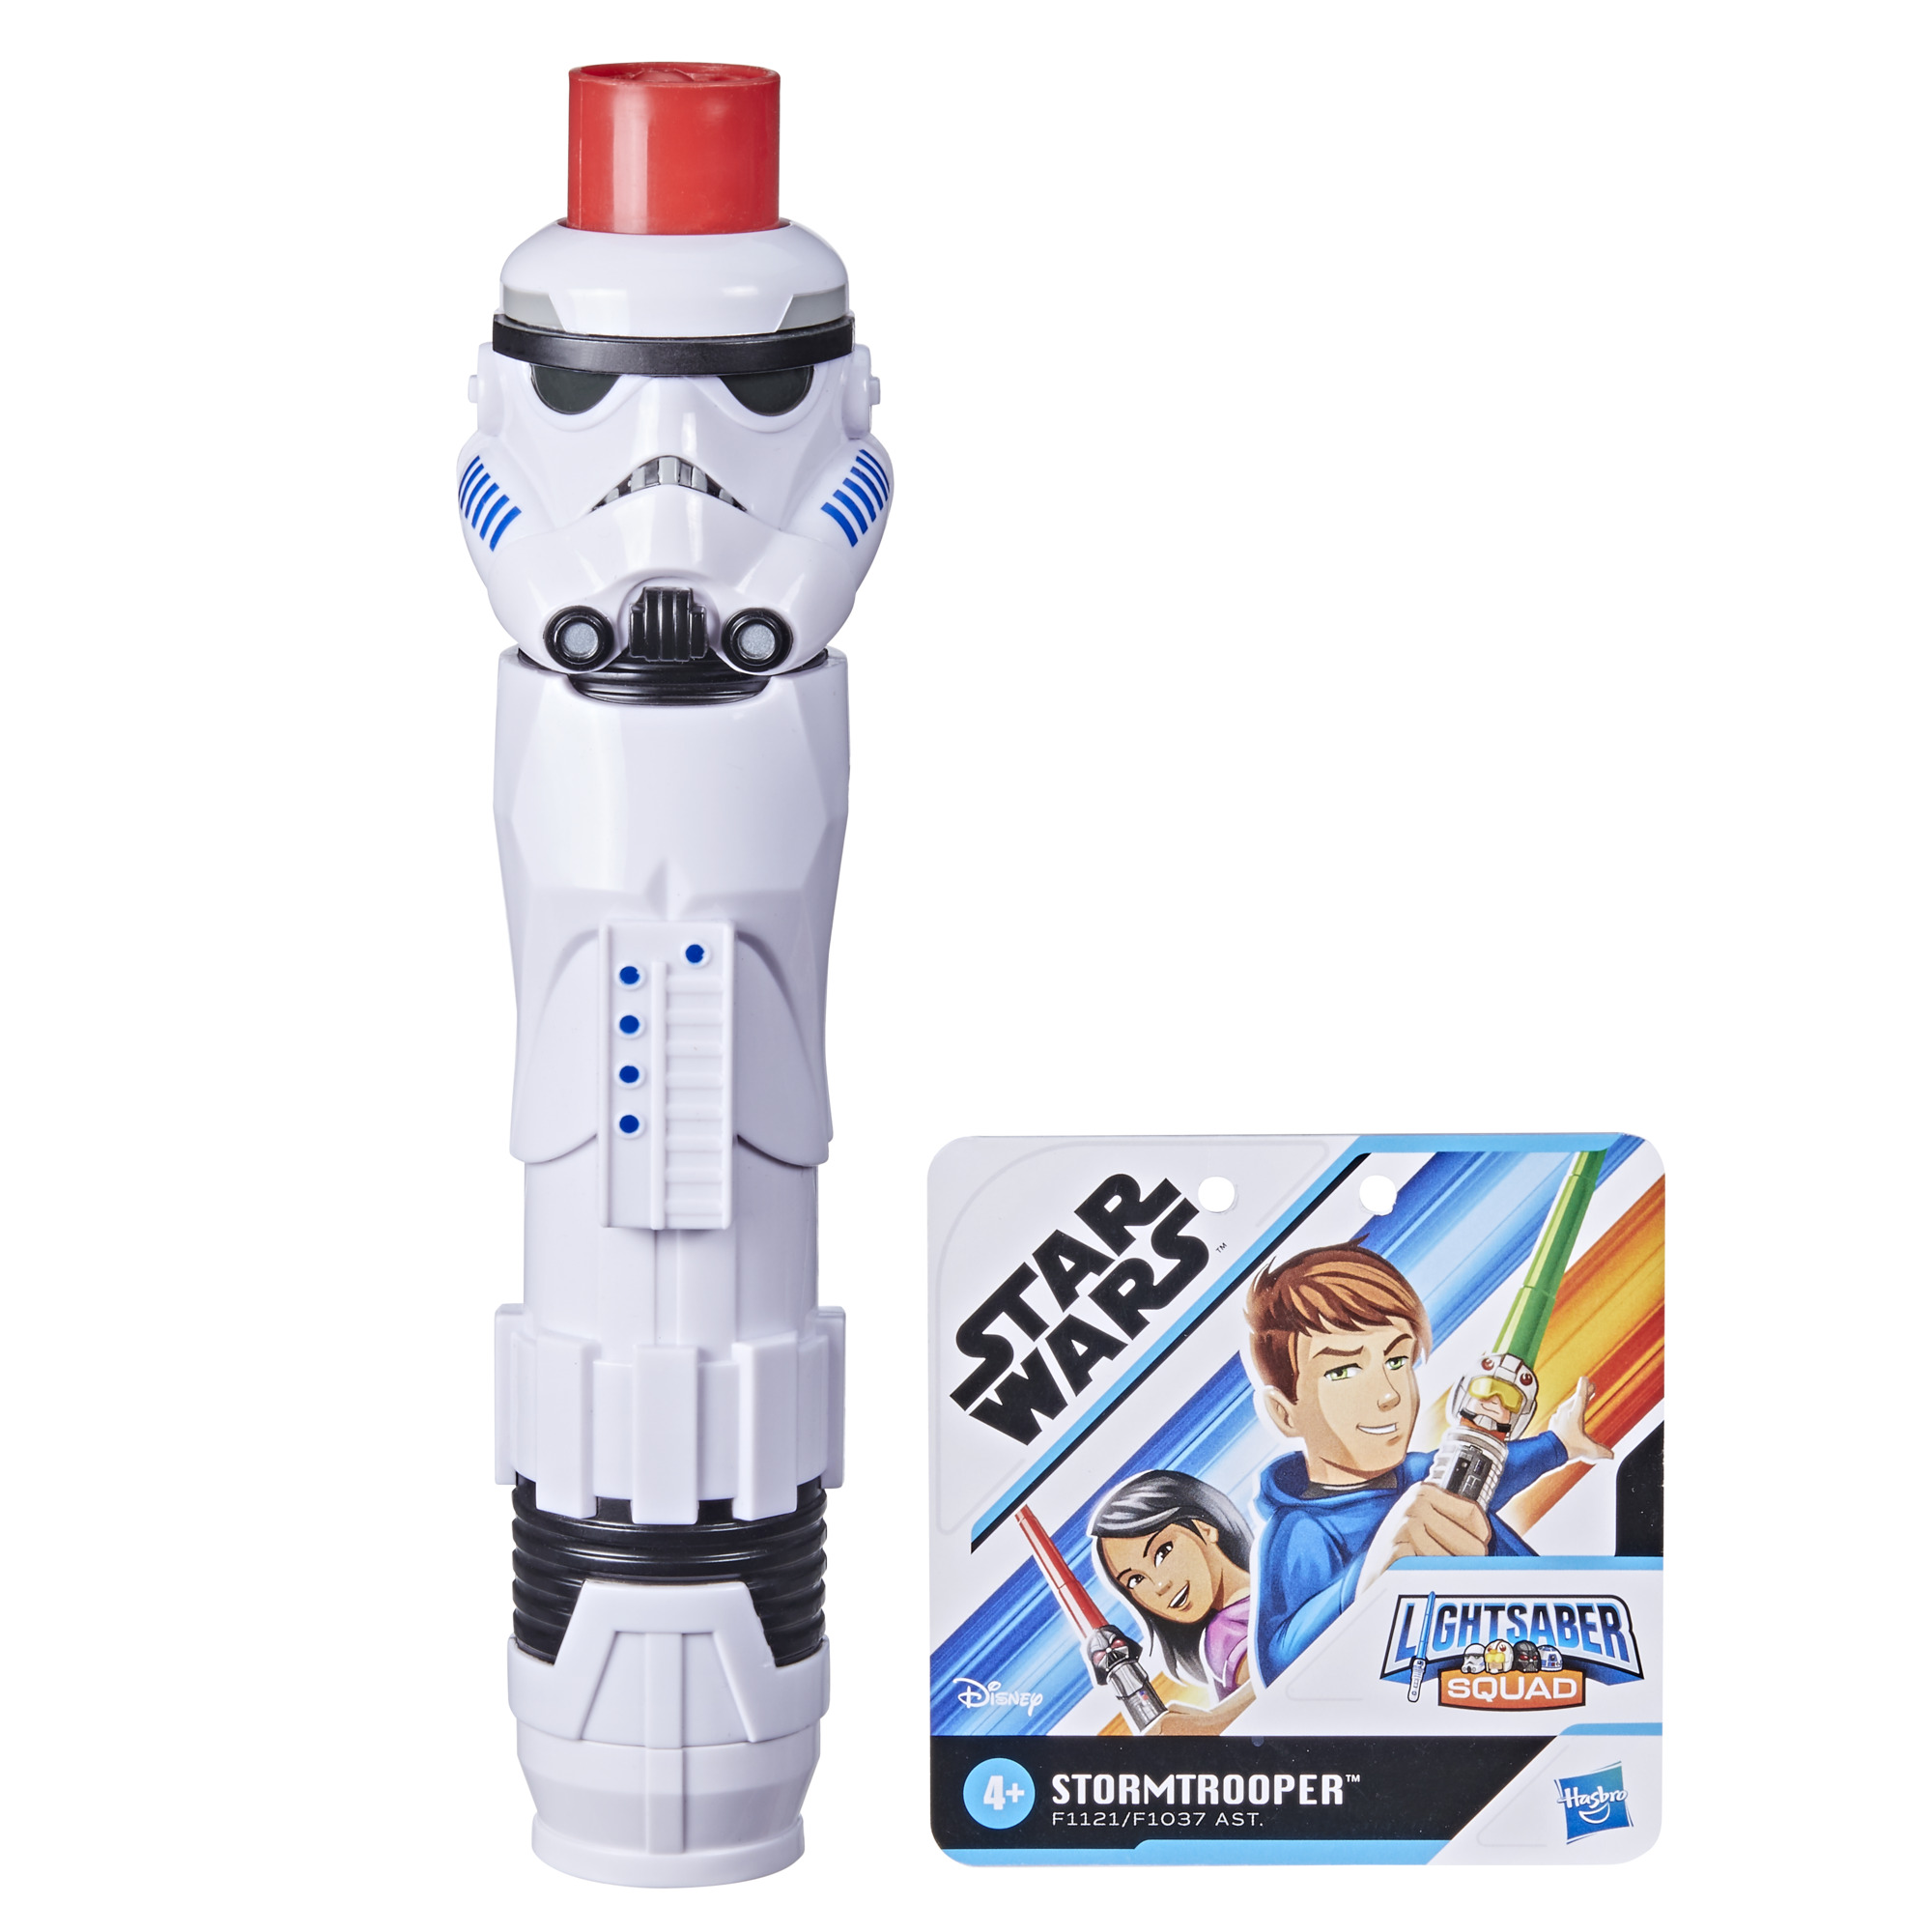 SW Imperial Stormtrooper Lightsaber Squad Lightsaber Toy 1